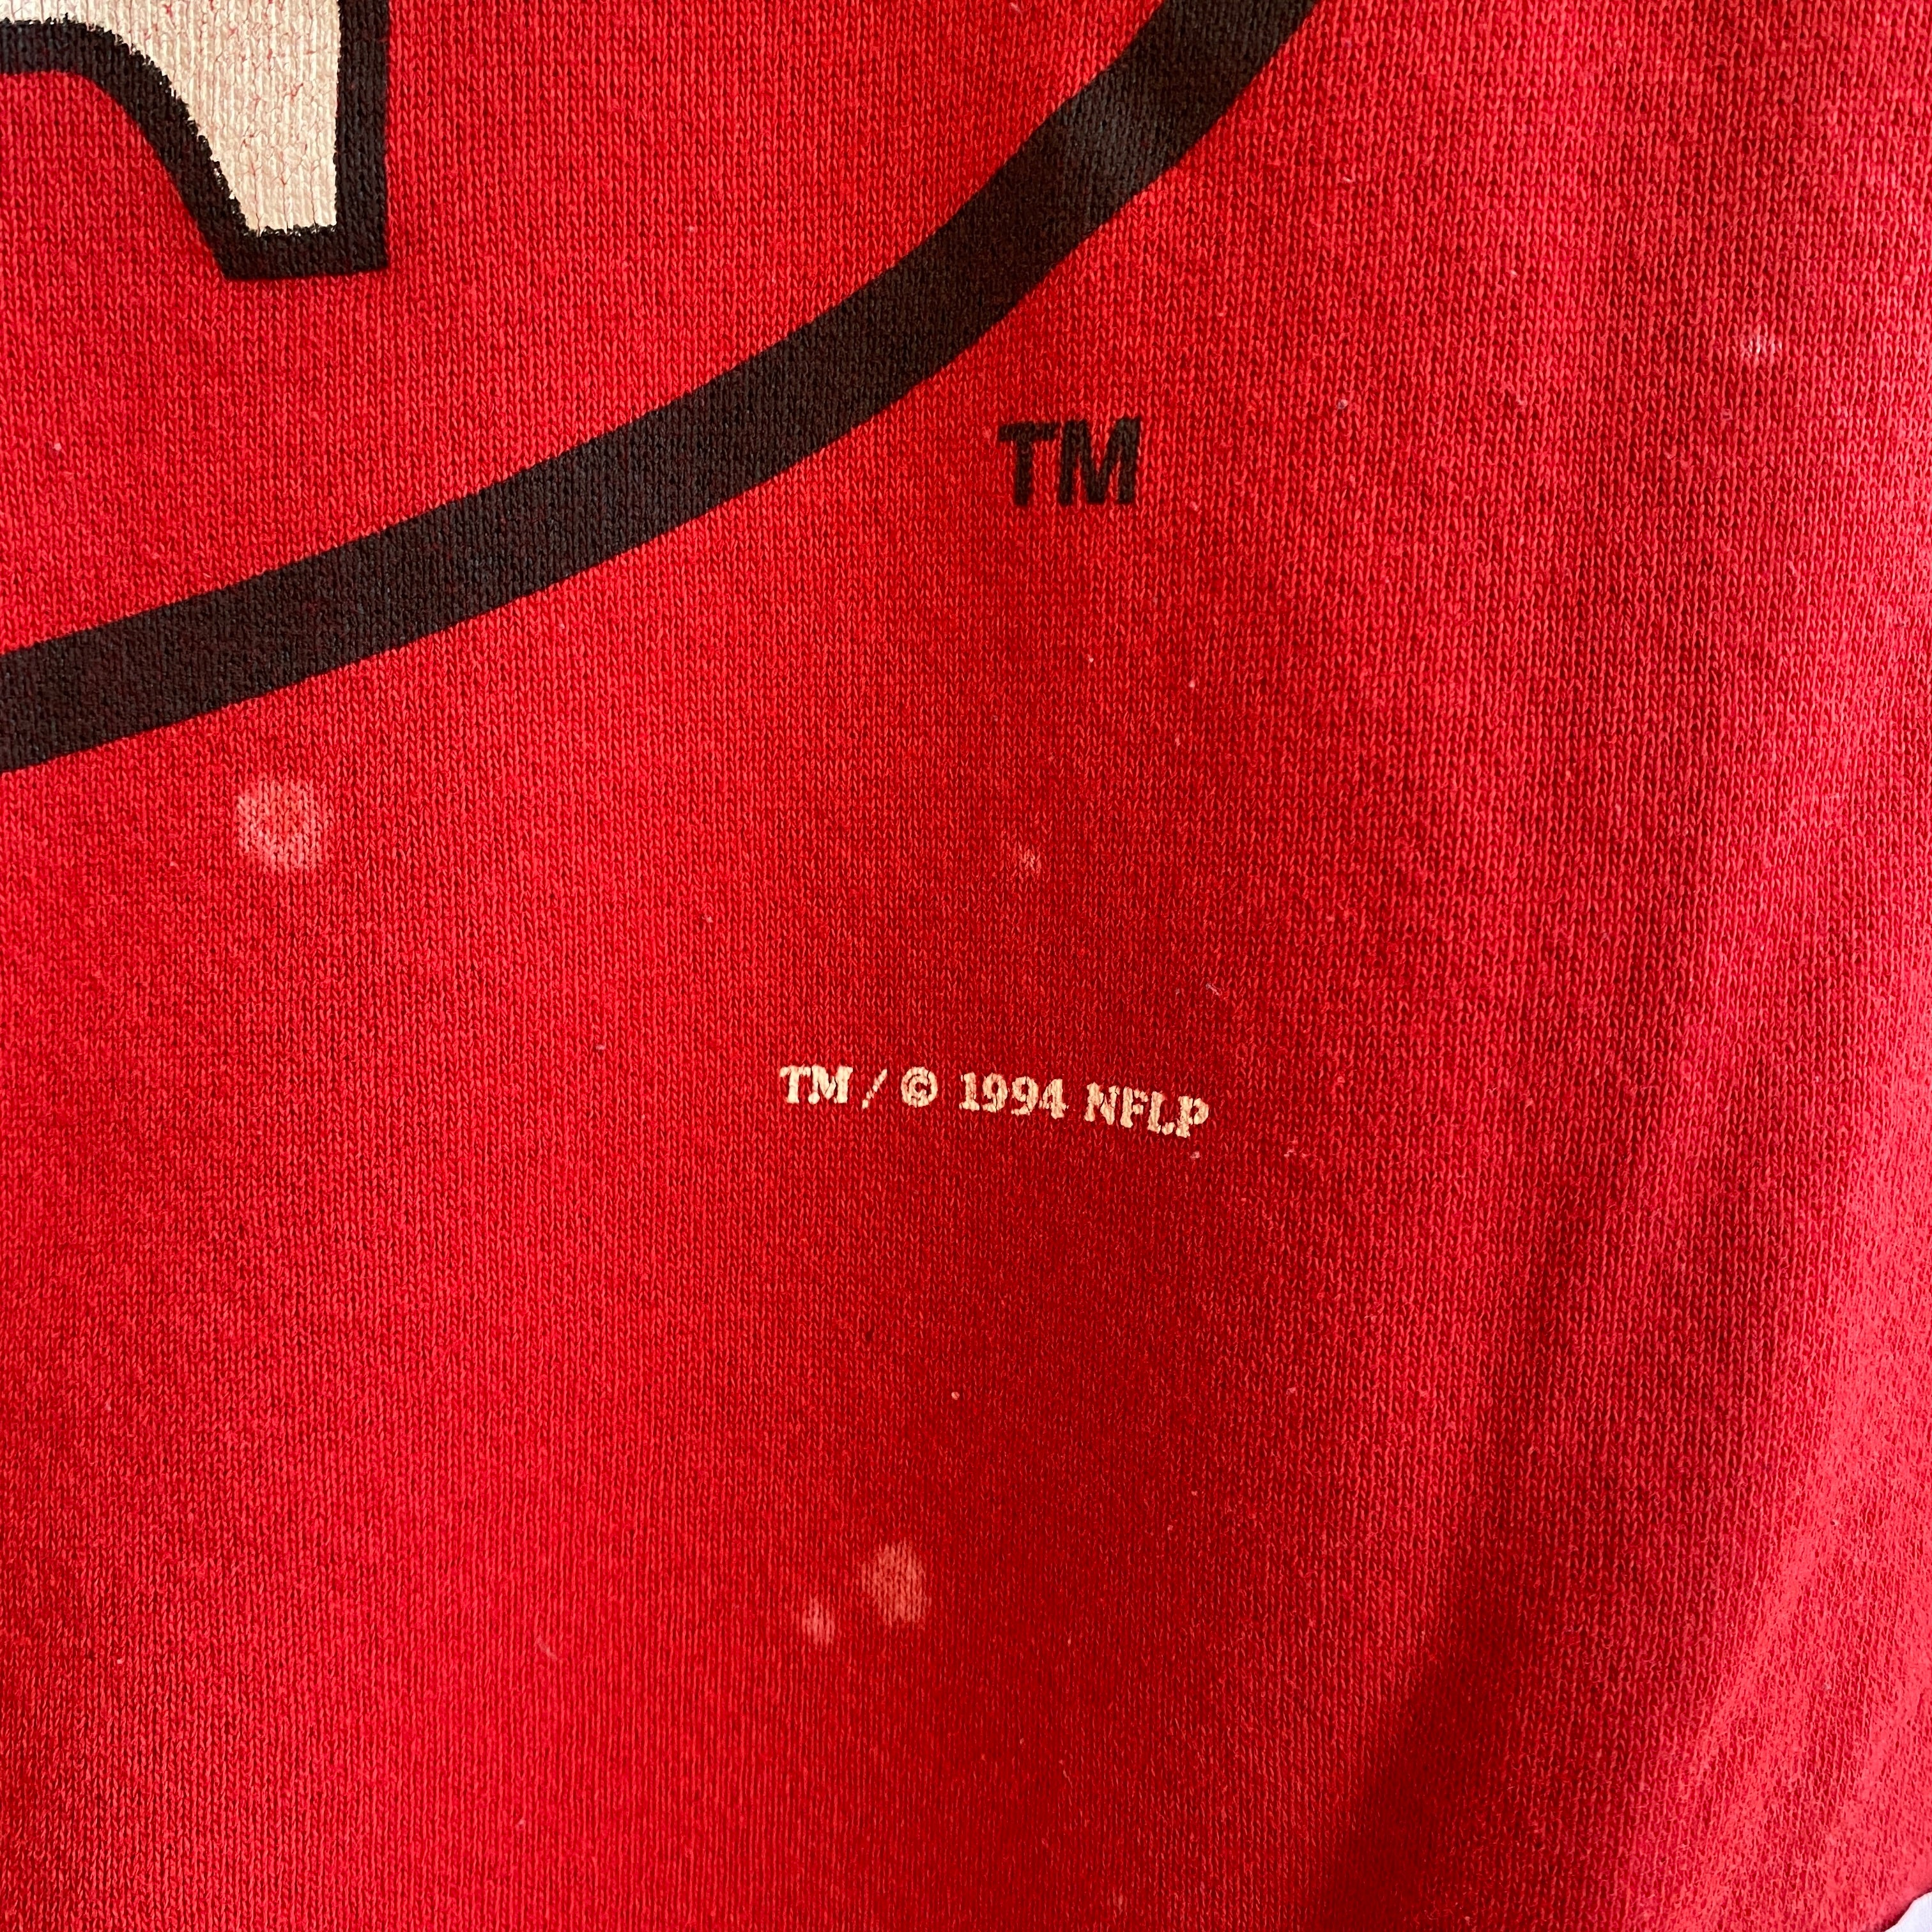 Red Sox Navy Sweatshirt – Vintage Fabrik